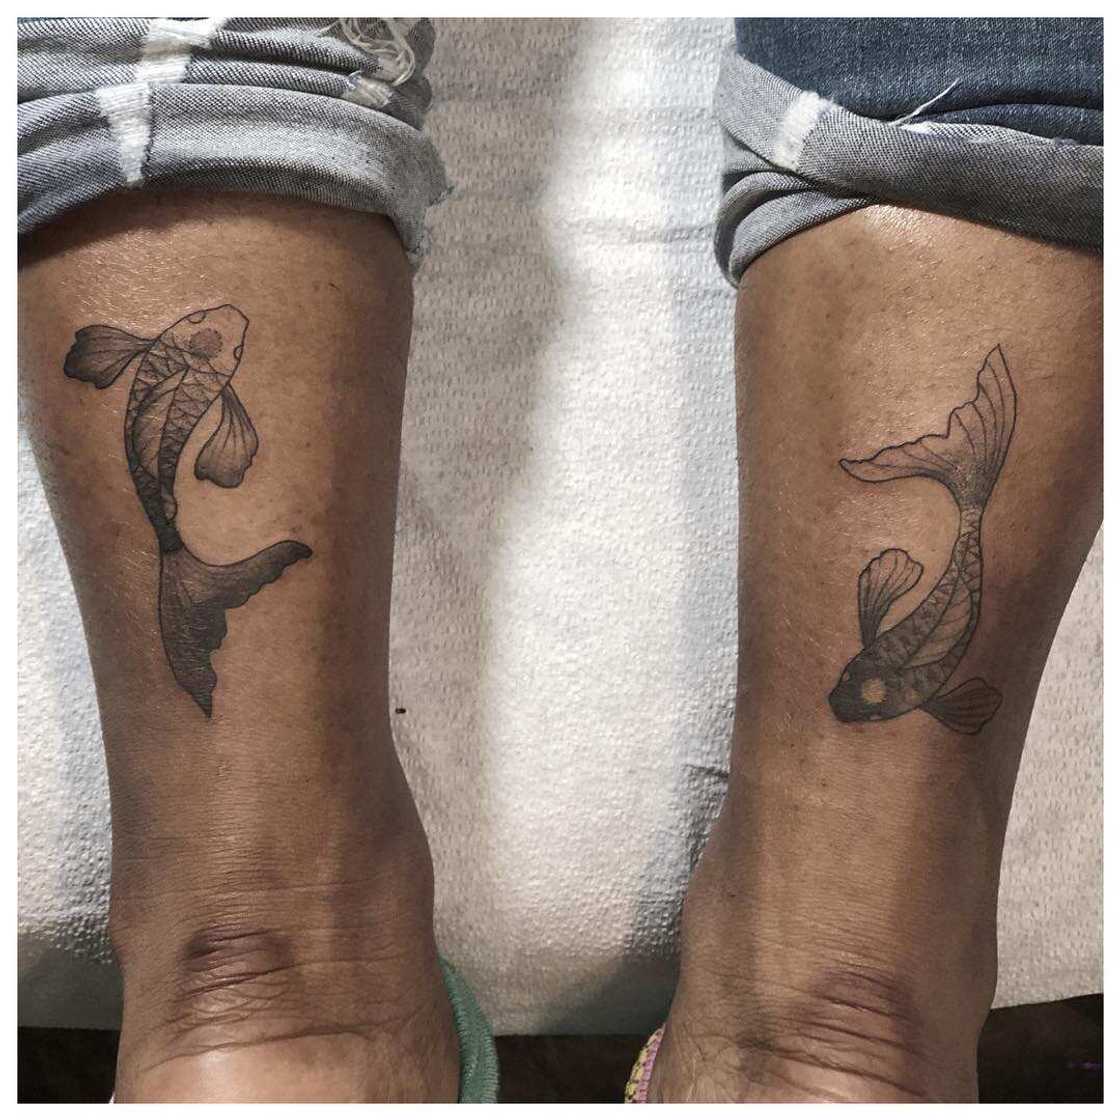 Pisces tattoos